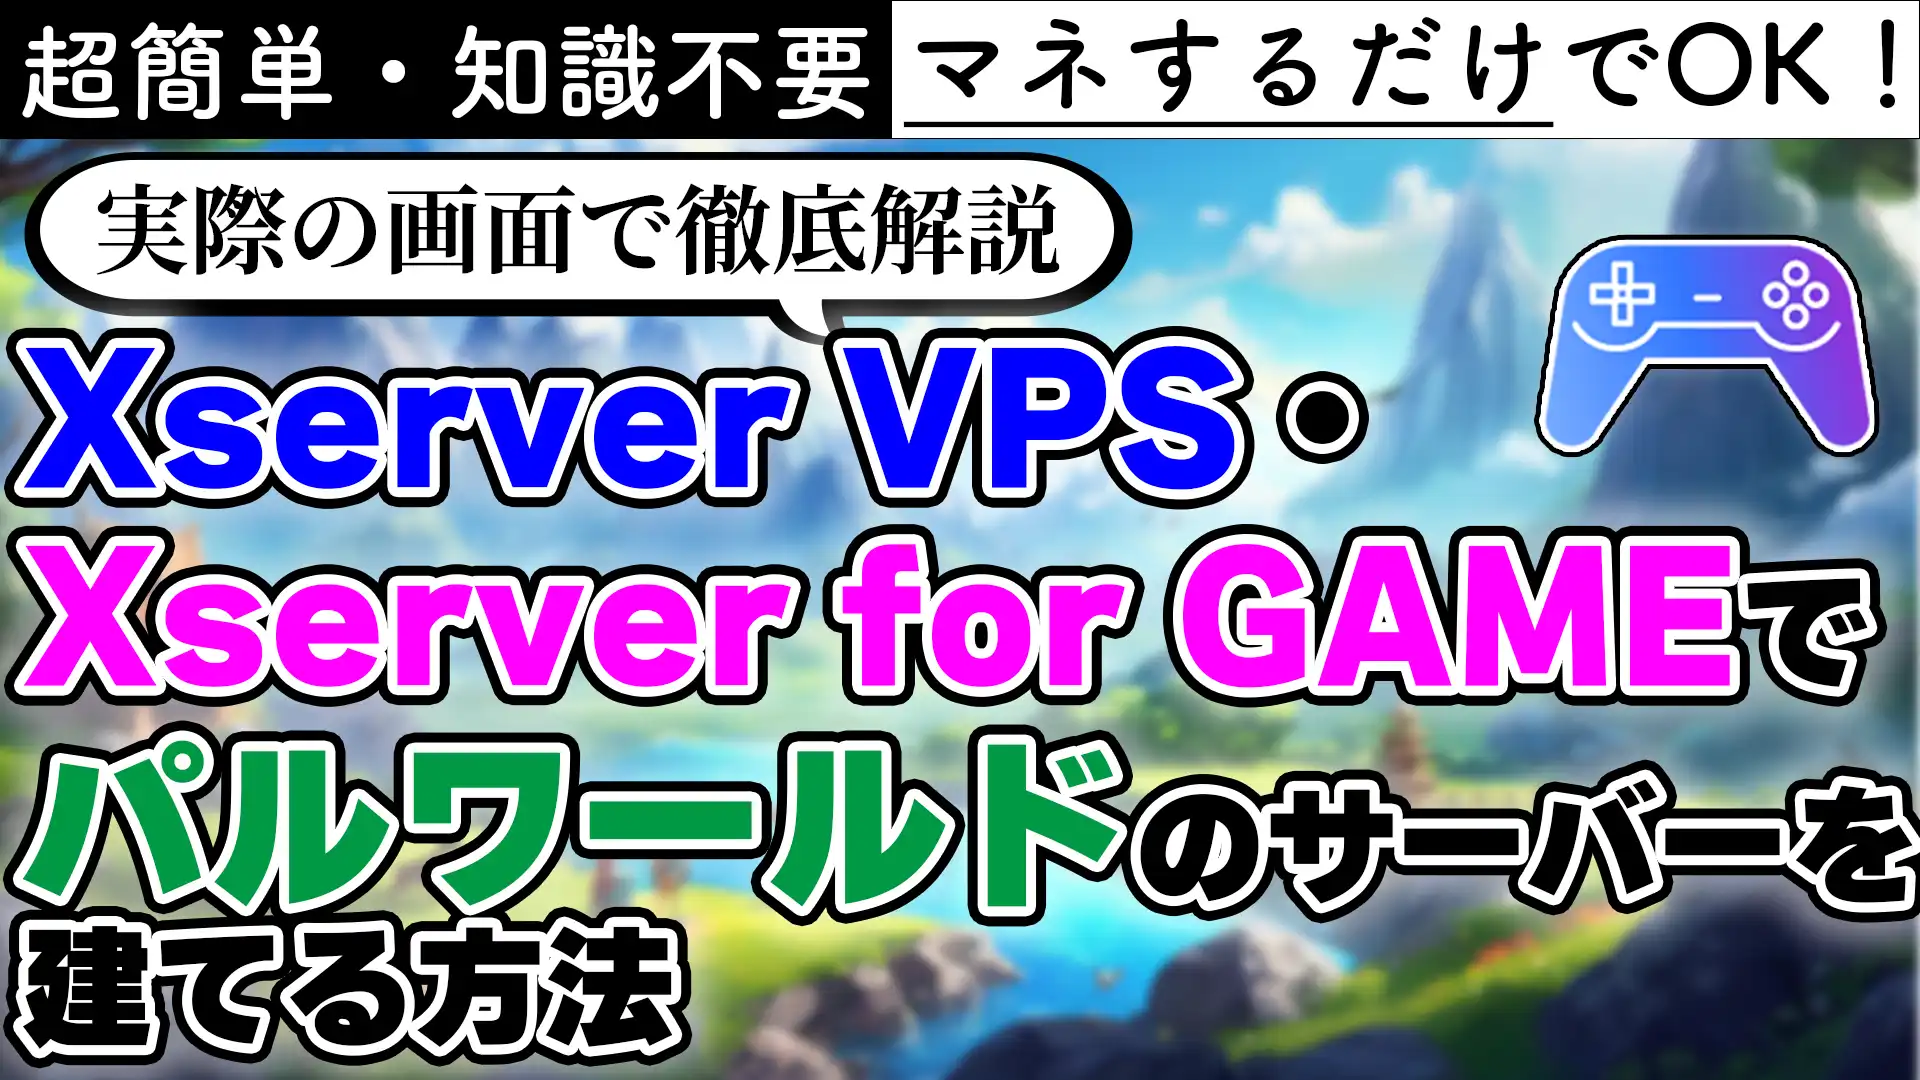 【やってみた】超簡単にXserver VPS(Xserver for GAME)でパルワールドのマルチサーバーを建てる【テンプレート】